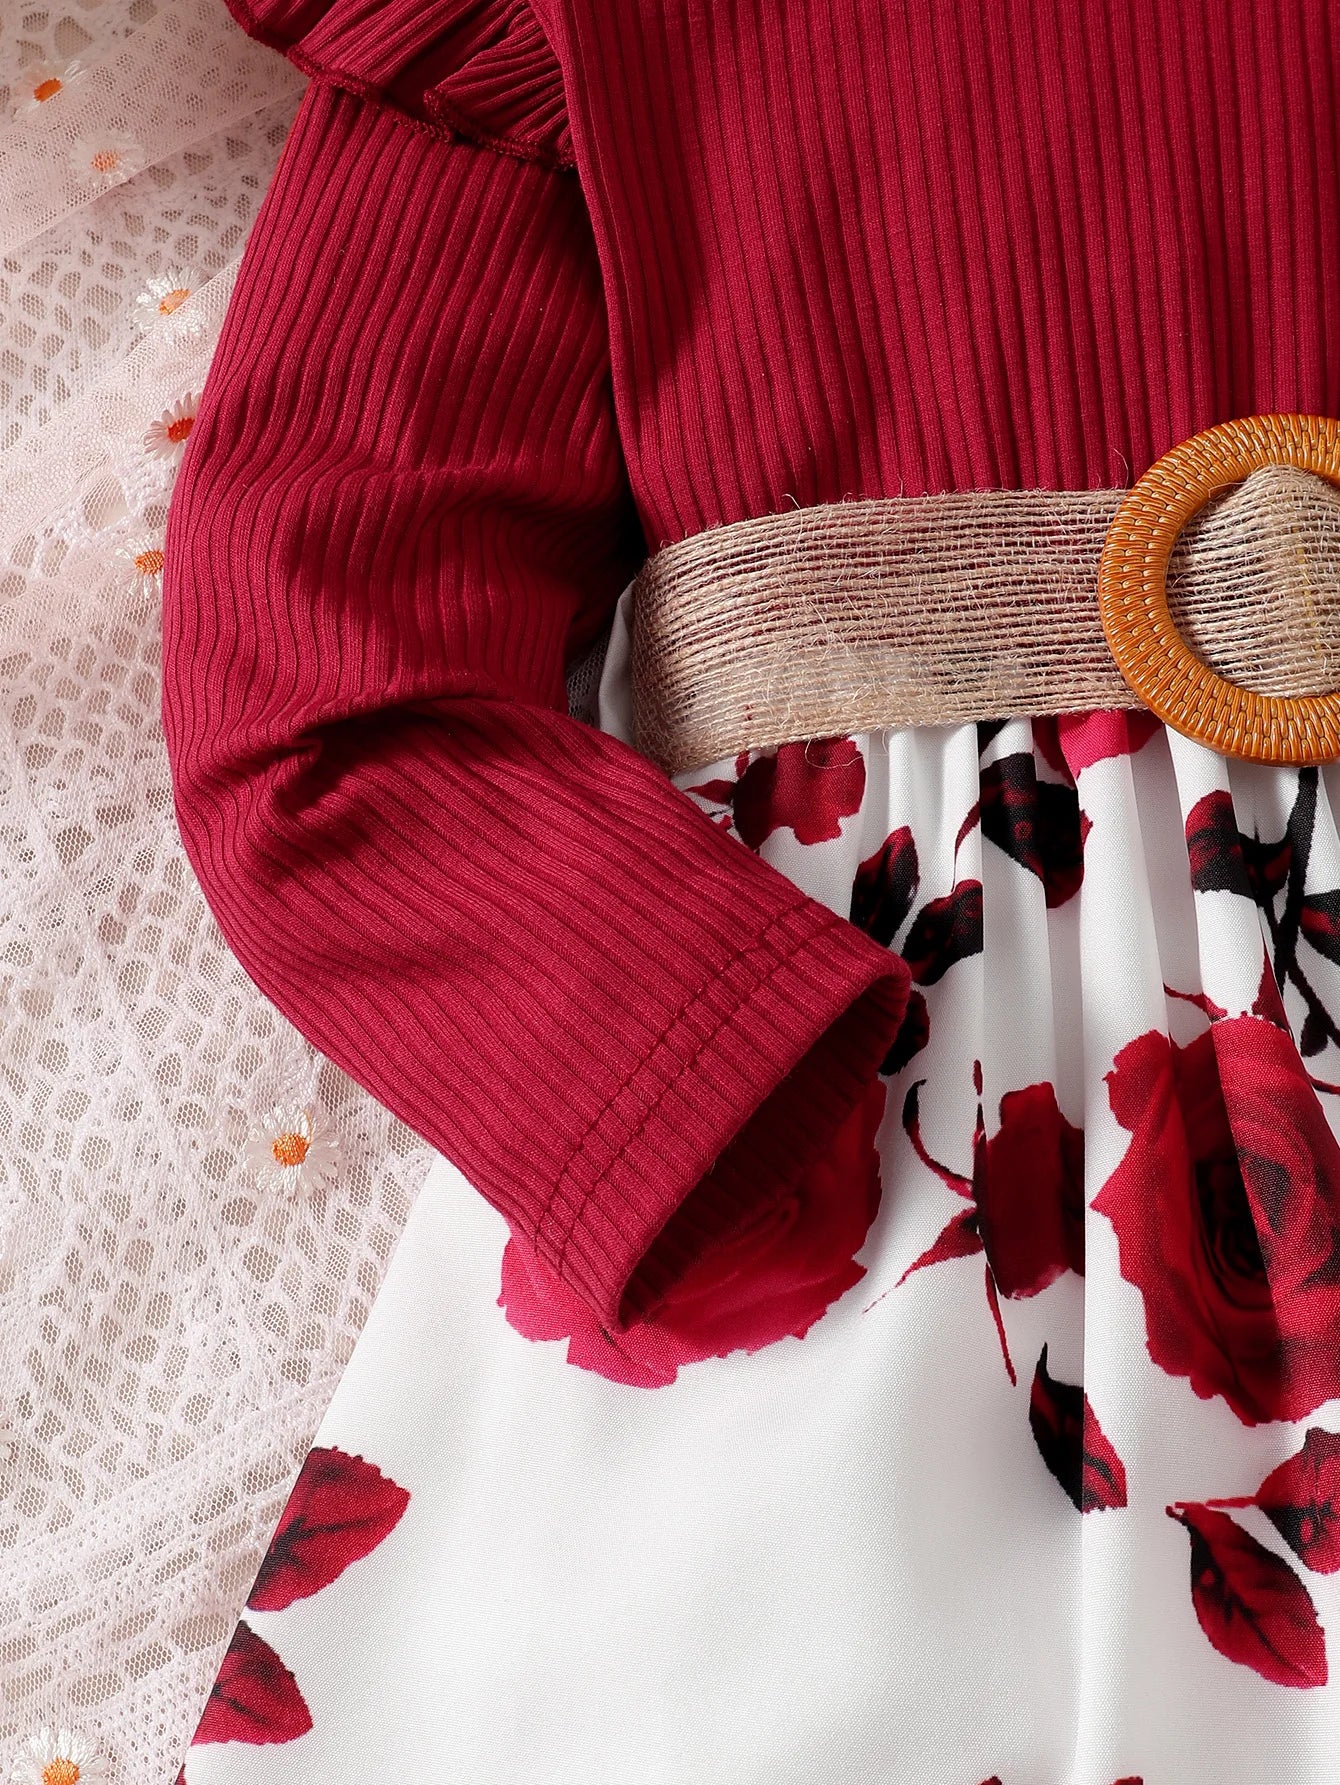 "Vestido Rojo para Niñas: Fiesta y Moda